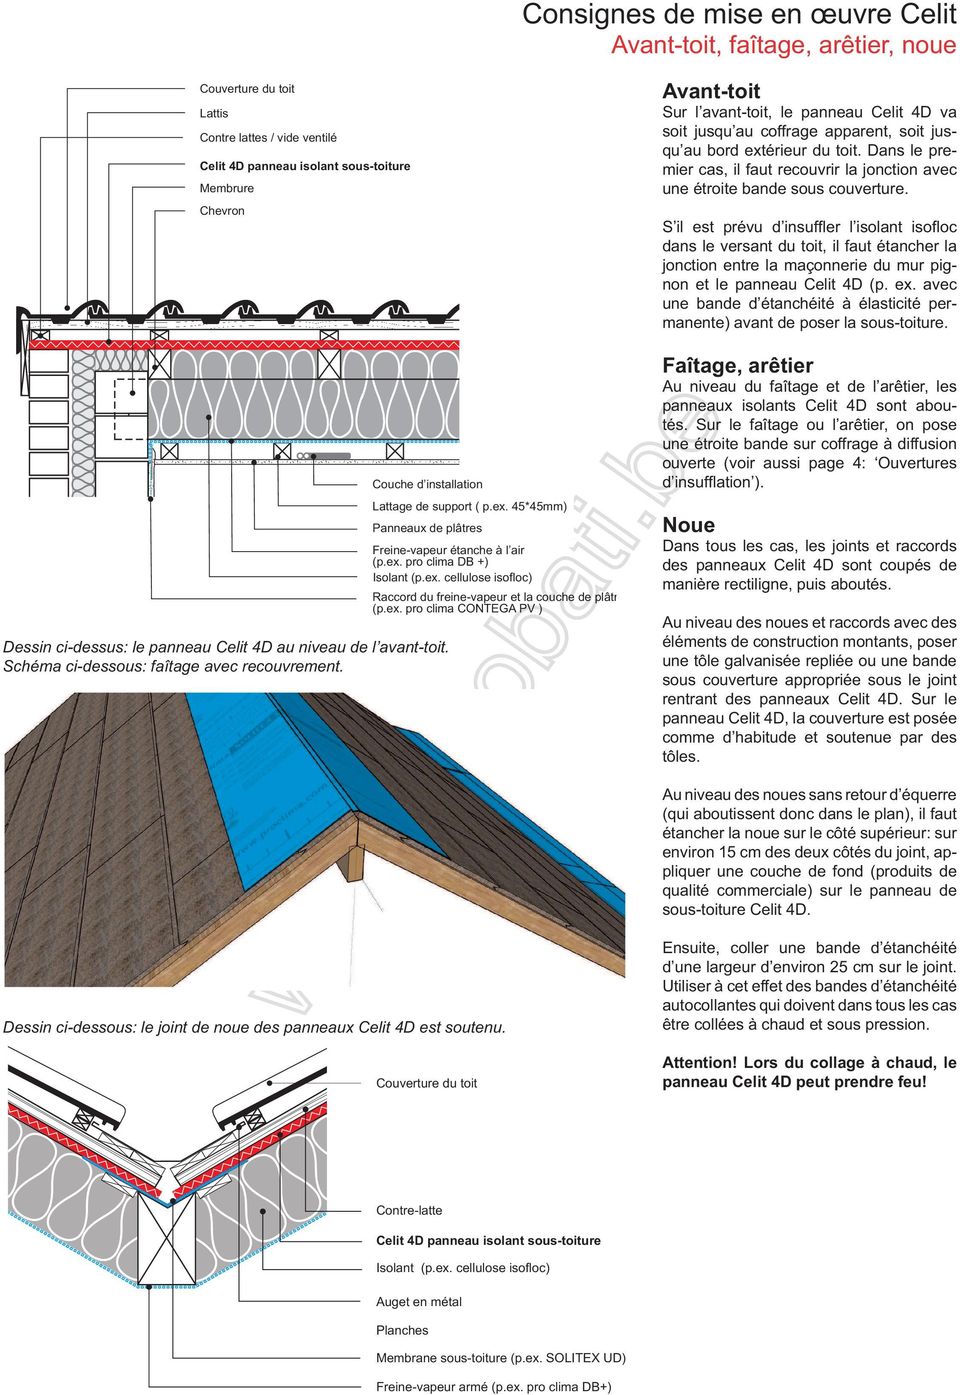 pro clima DB +) Isolant (p.ex. cellulose isofloc) Raccord du freine-vapeur et la couche de plâtre (p.ex. pro clima CONTEGA PV ) Couverture du toit Contre-latte Isolant (p.